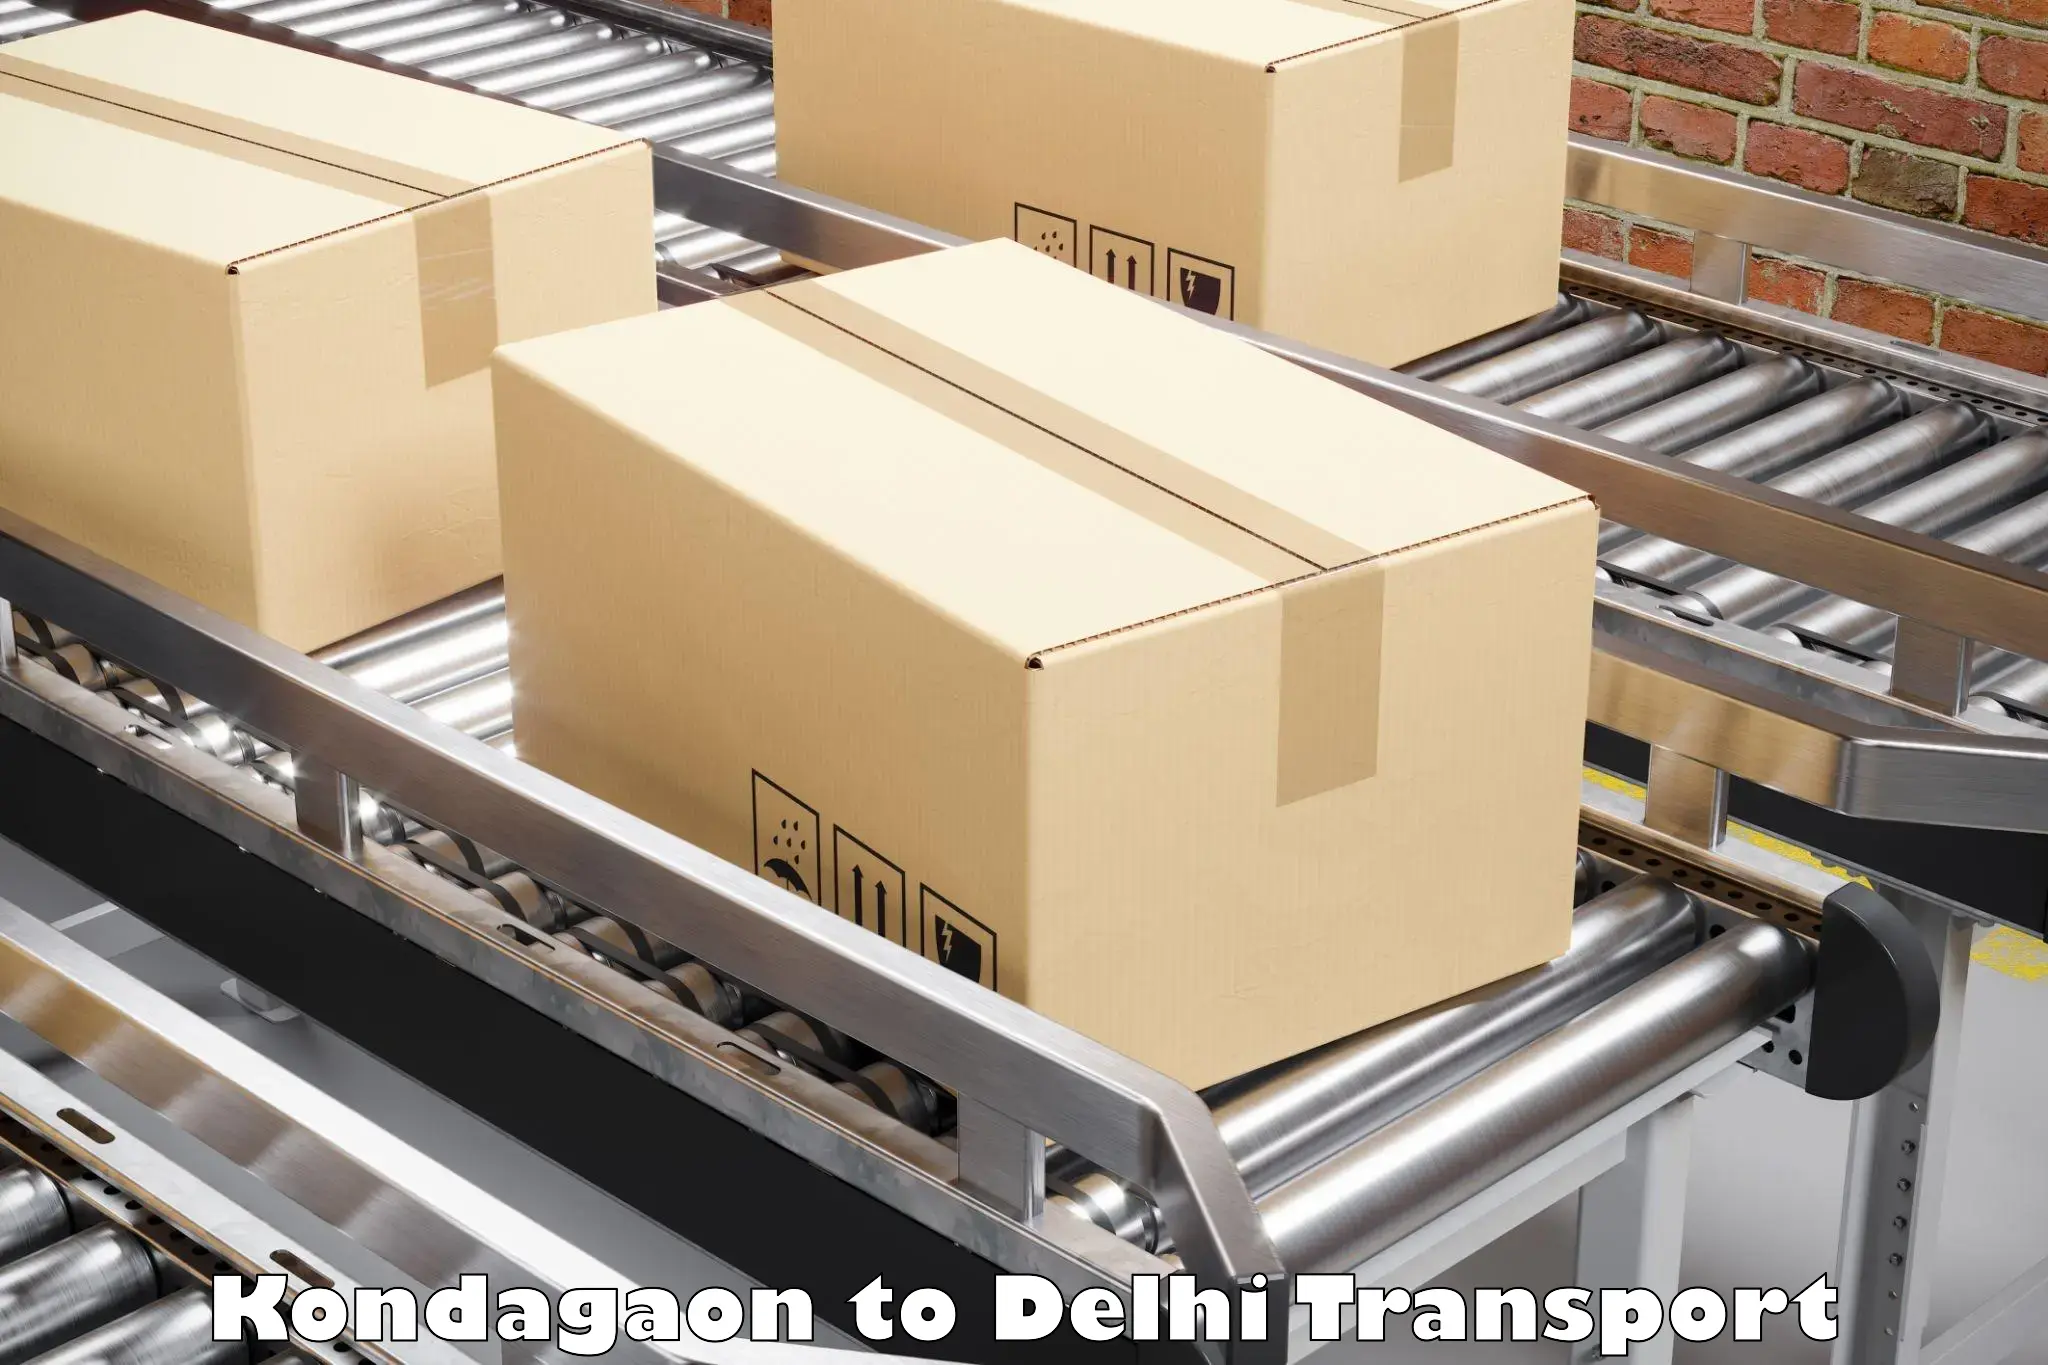 Container transport service Kondagaon to Sarojini Nagar